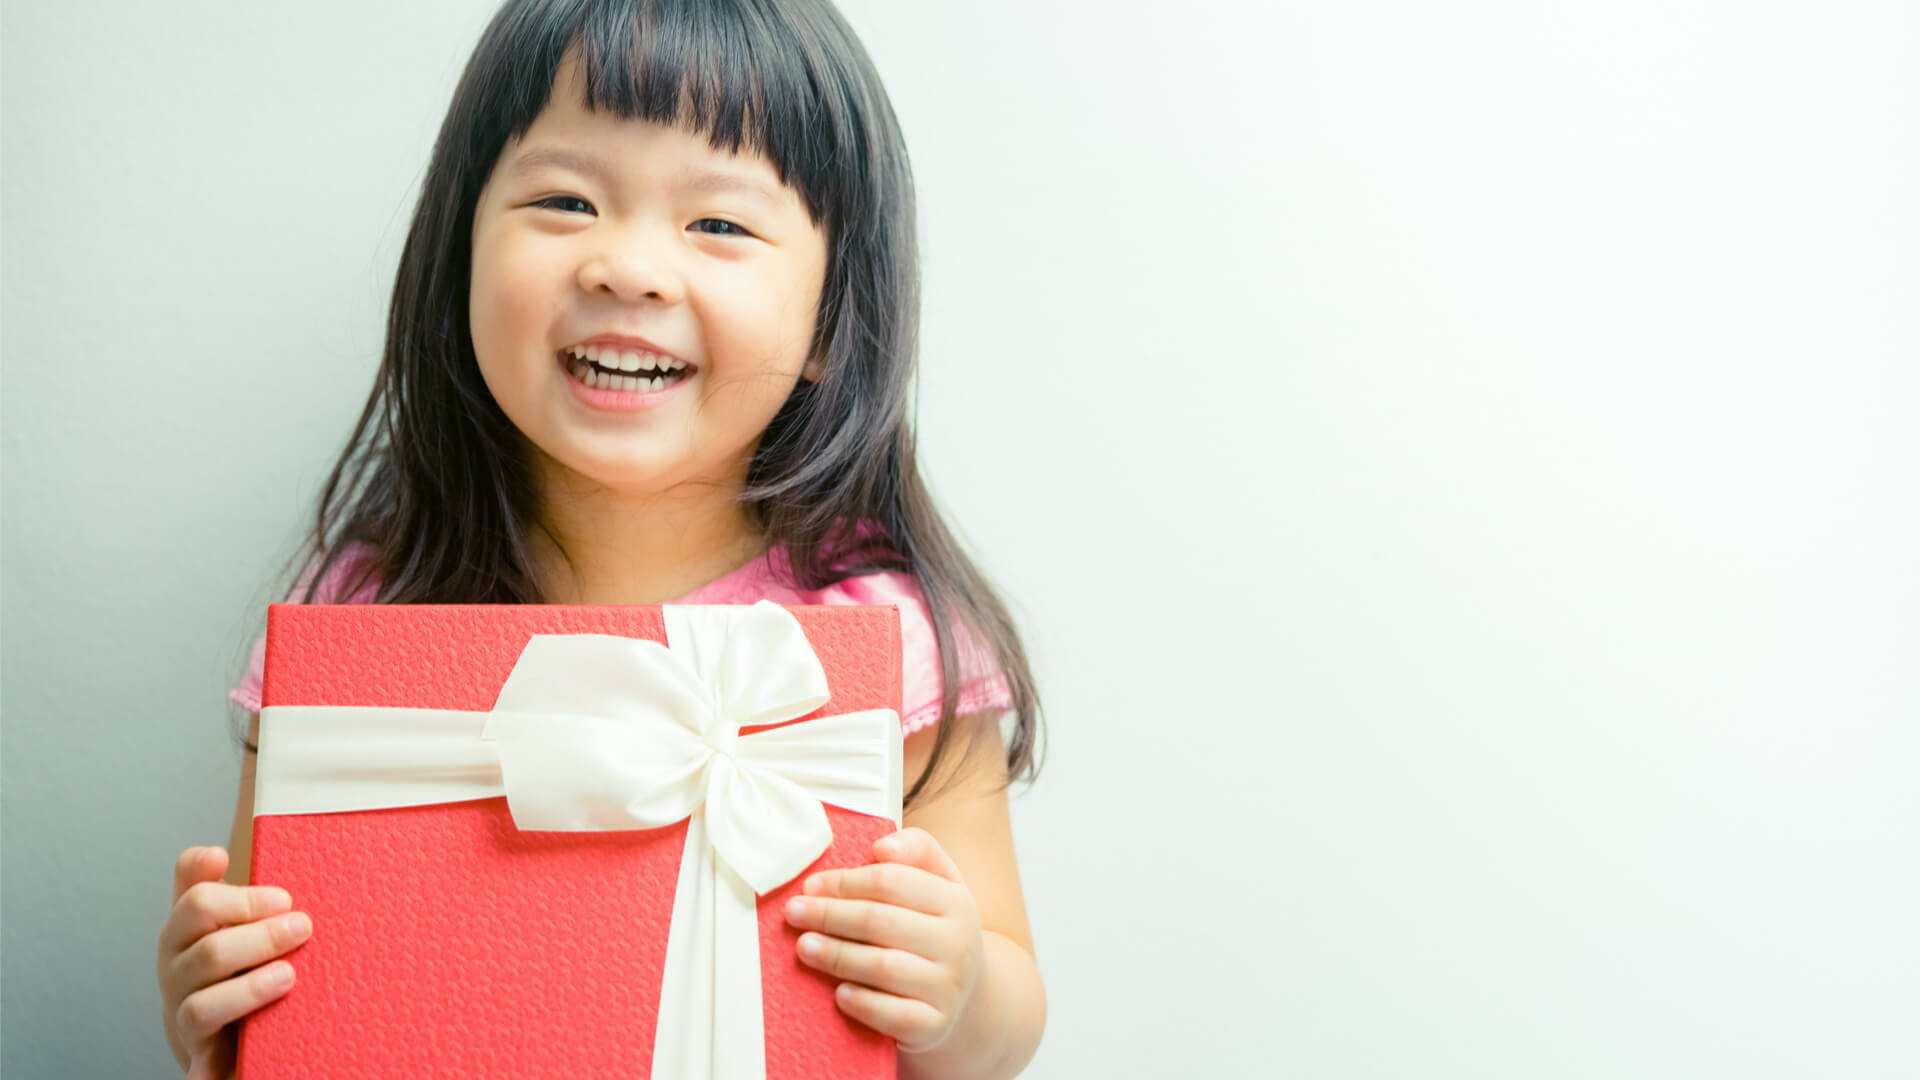 Little asia. Подарки для детей. Девочка улыбается. Фото детей с подарками. Дети держат подарочную коробку.